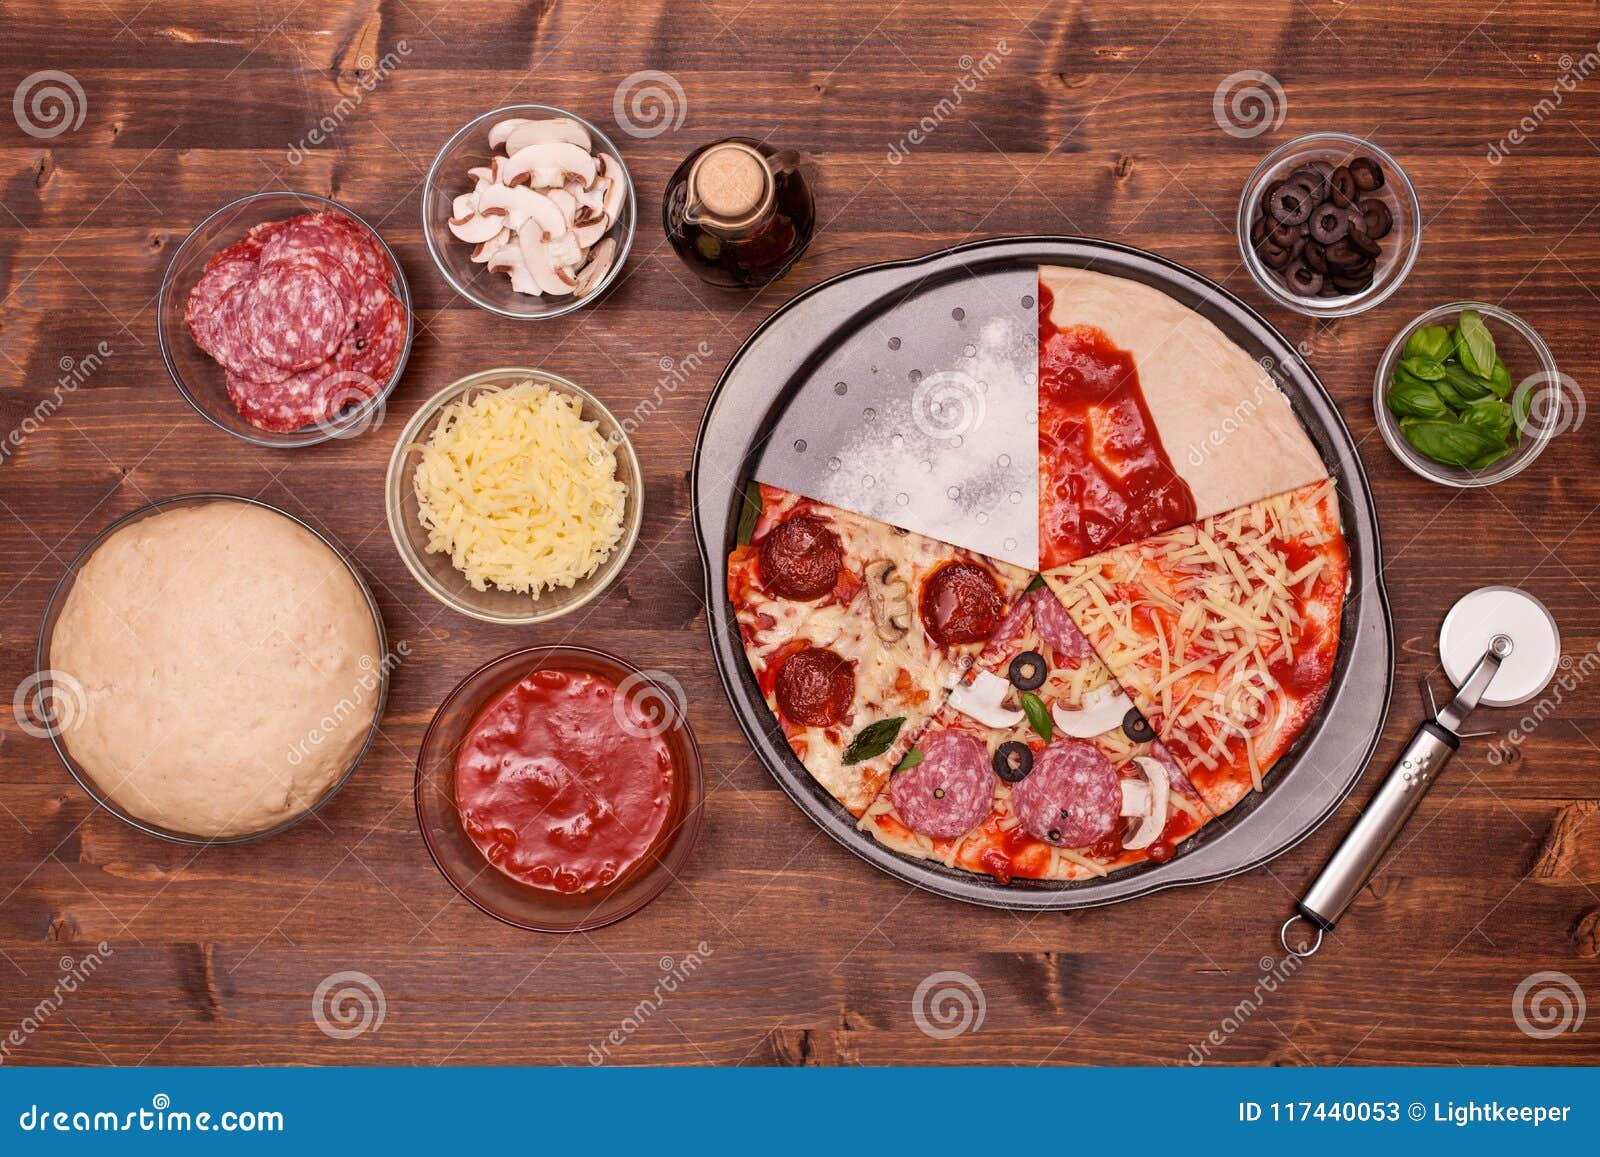 что нужно для пиццы ингредиенты в домашних условиях духовке фото 67